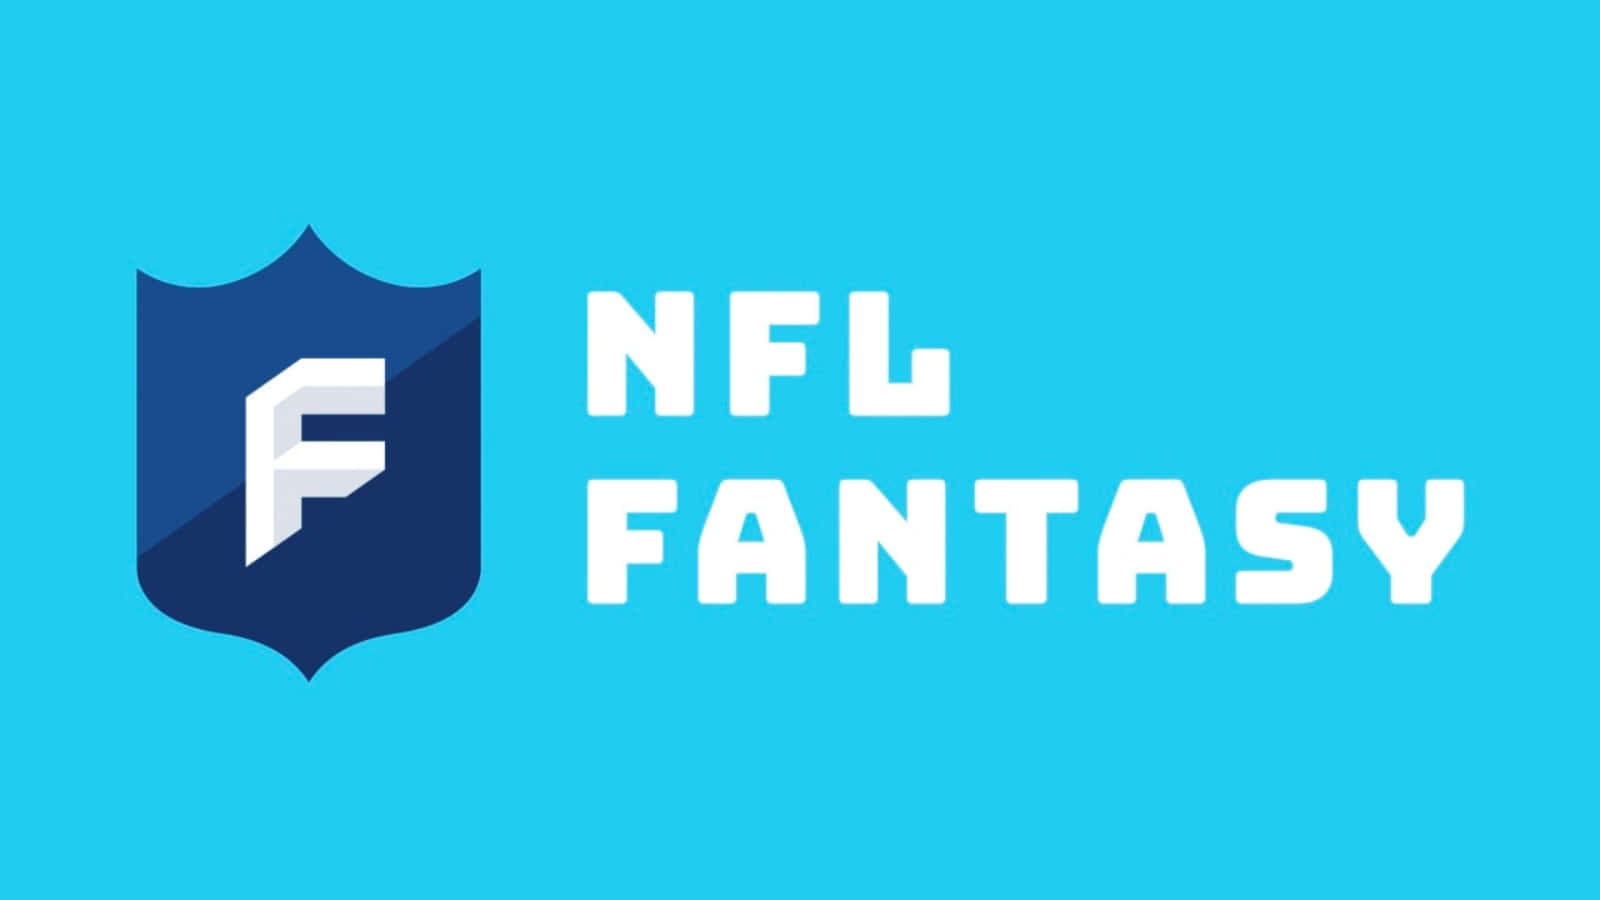 Nfl Fantasy Football 2019 - Nfl Fantasy Football 2019 Wallpaper